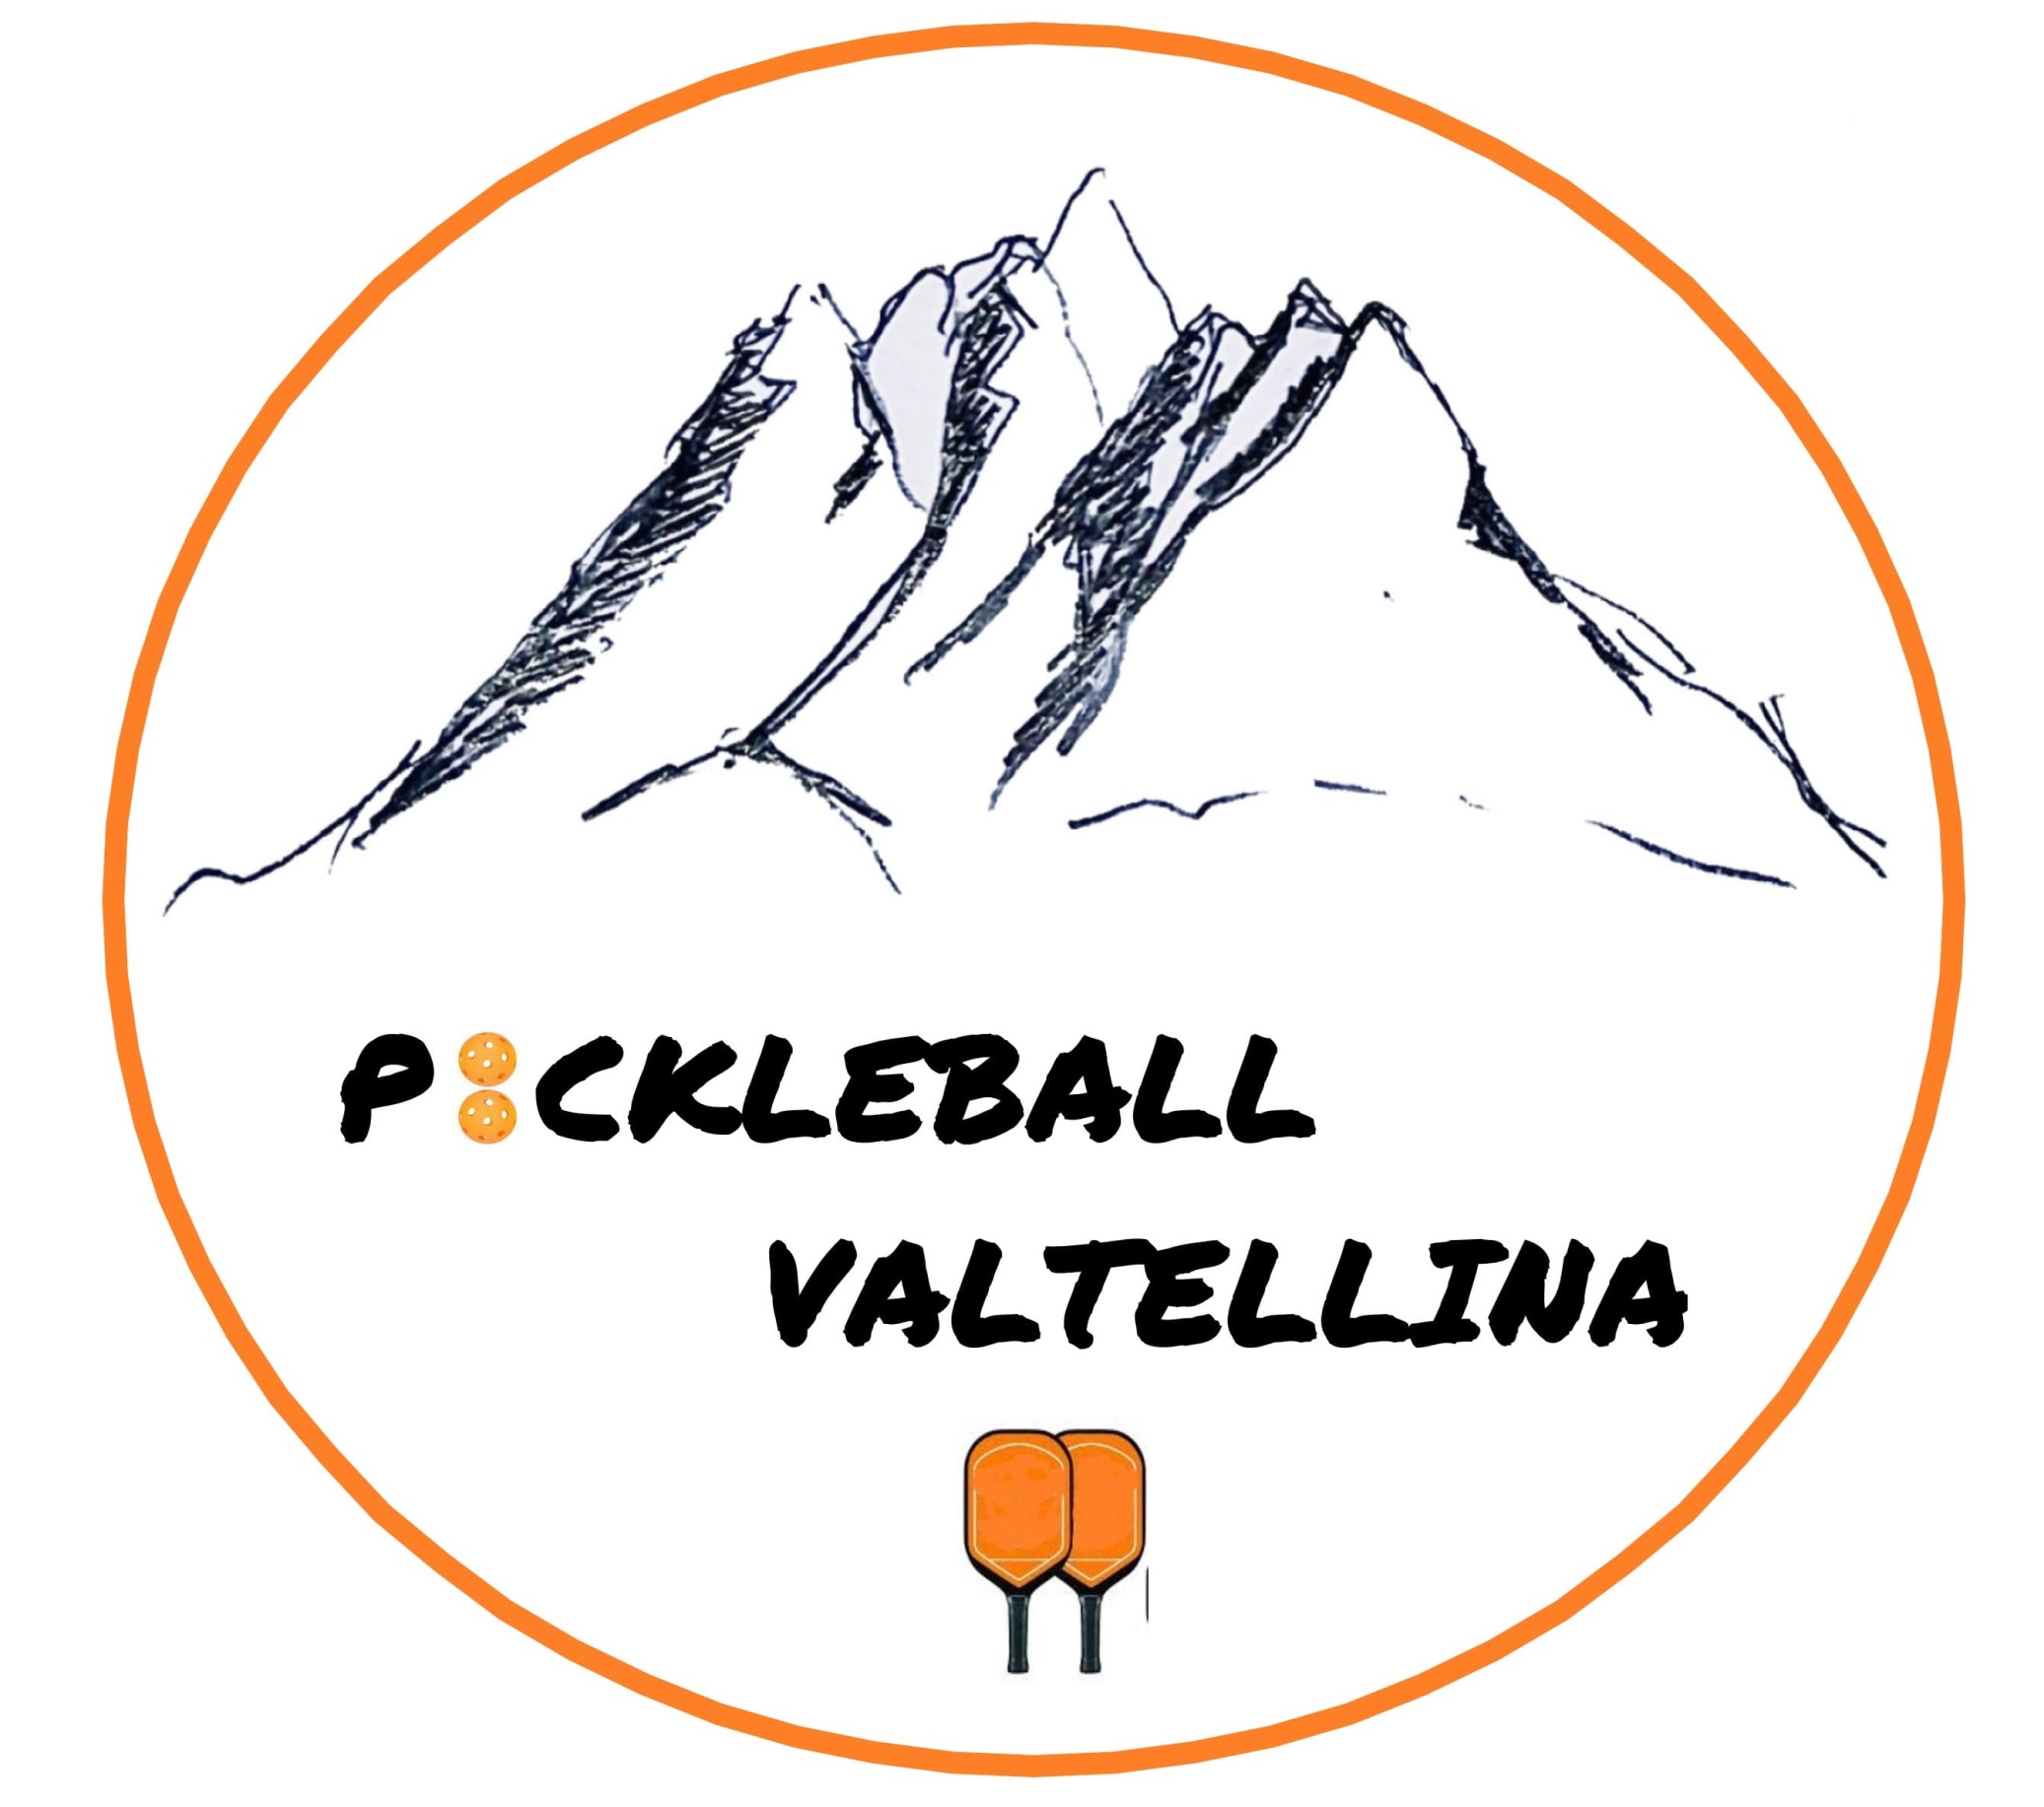 Pickleball Valtellina